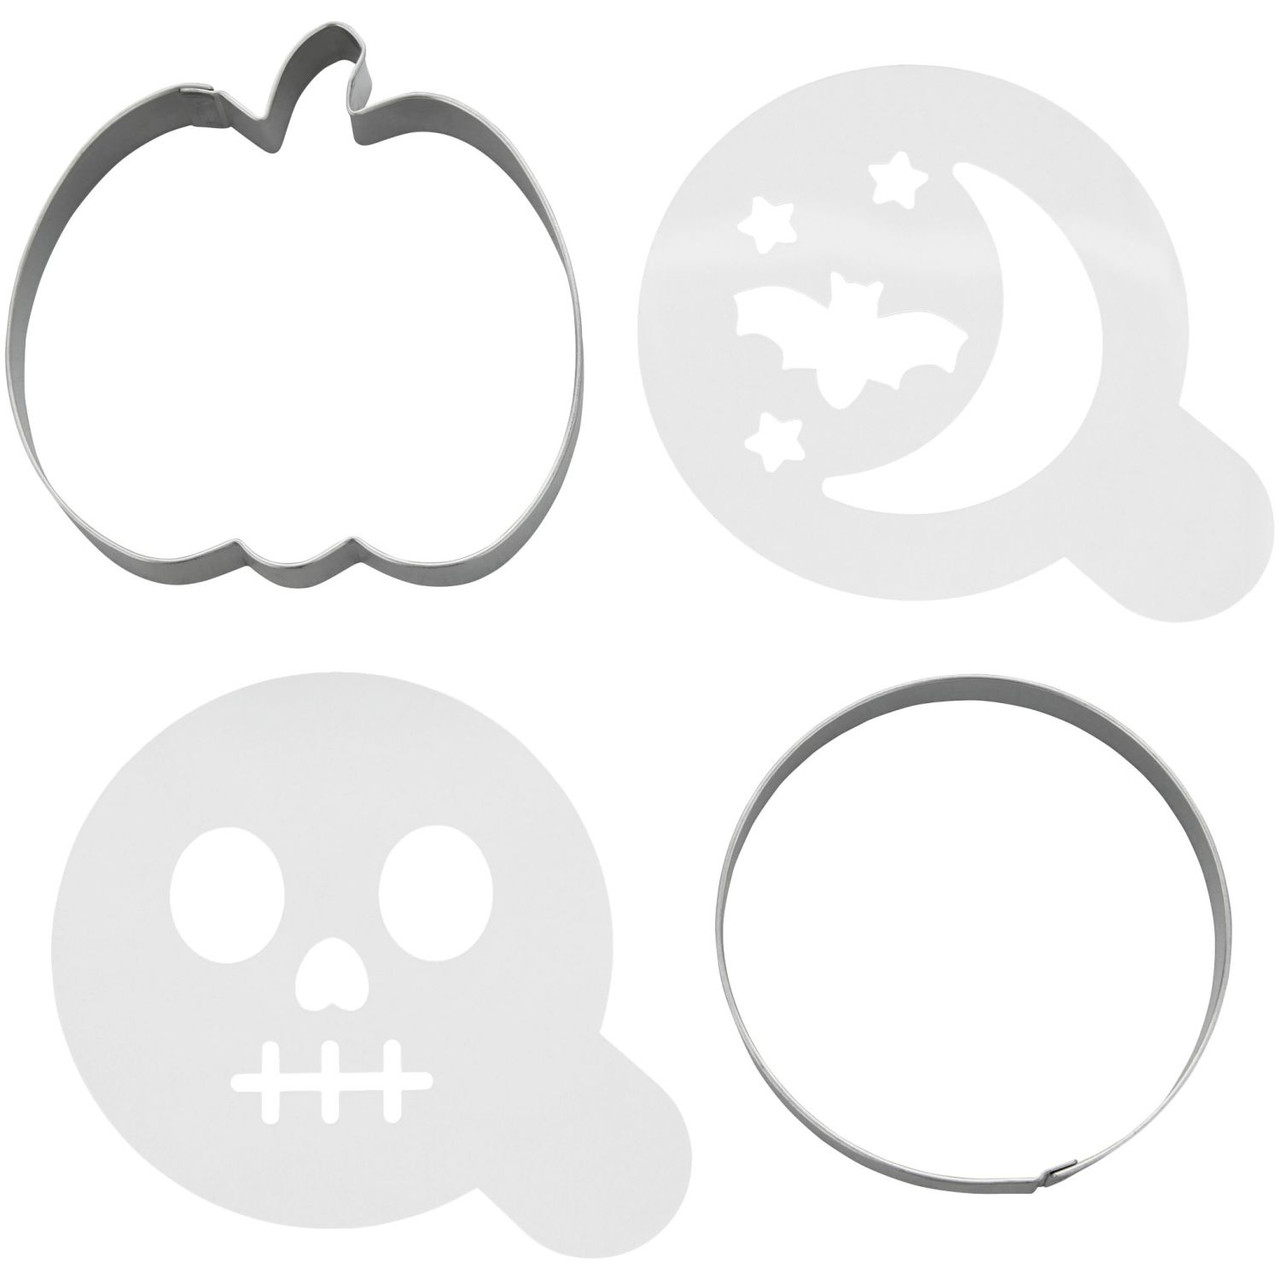 Happy Halloween Cookie Cutter and Stencil Set, 4-Piece Set - Wilton